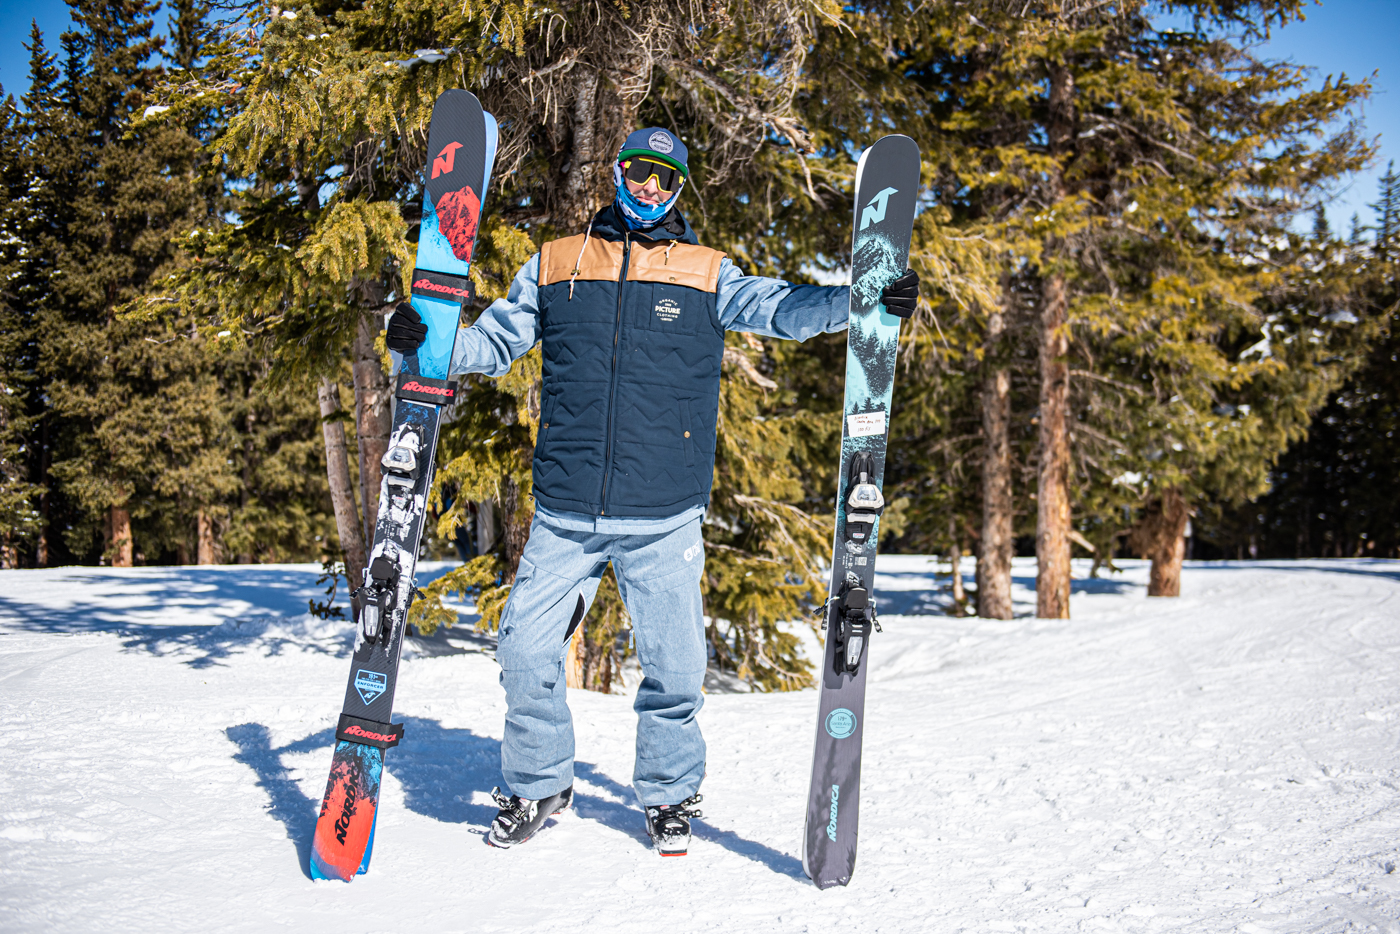 Twentyfour Aktivio sous-vêtements Chauds de Ski pour Homme Spécial activité Intense 